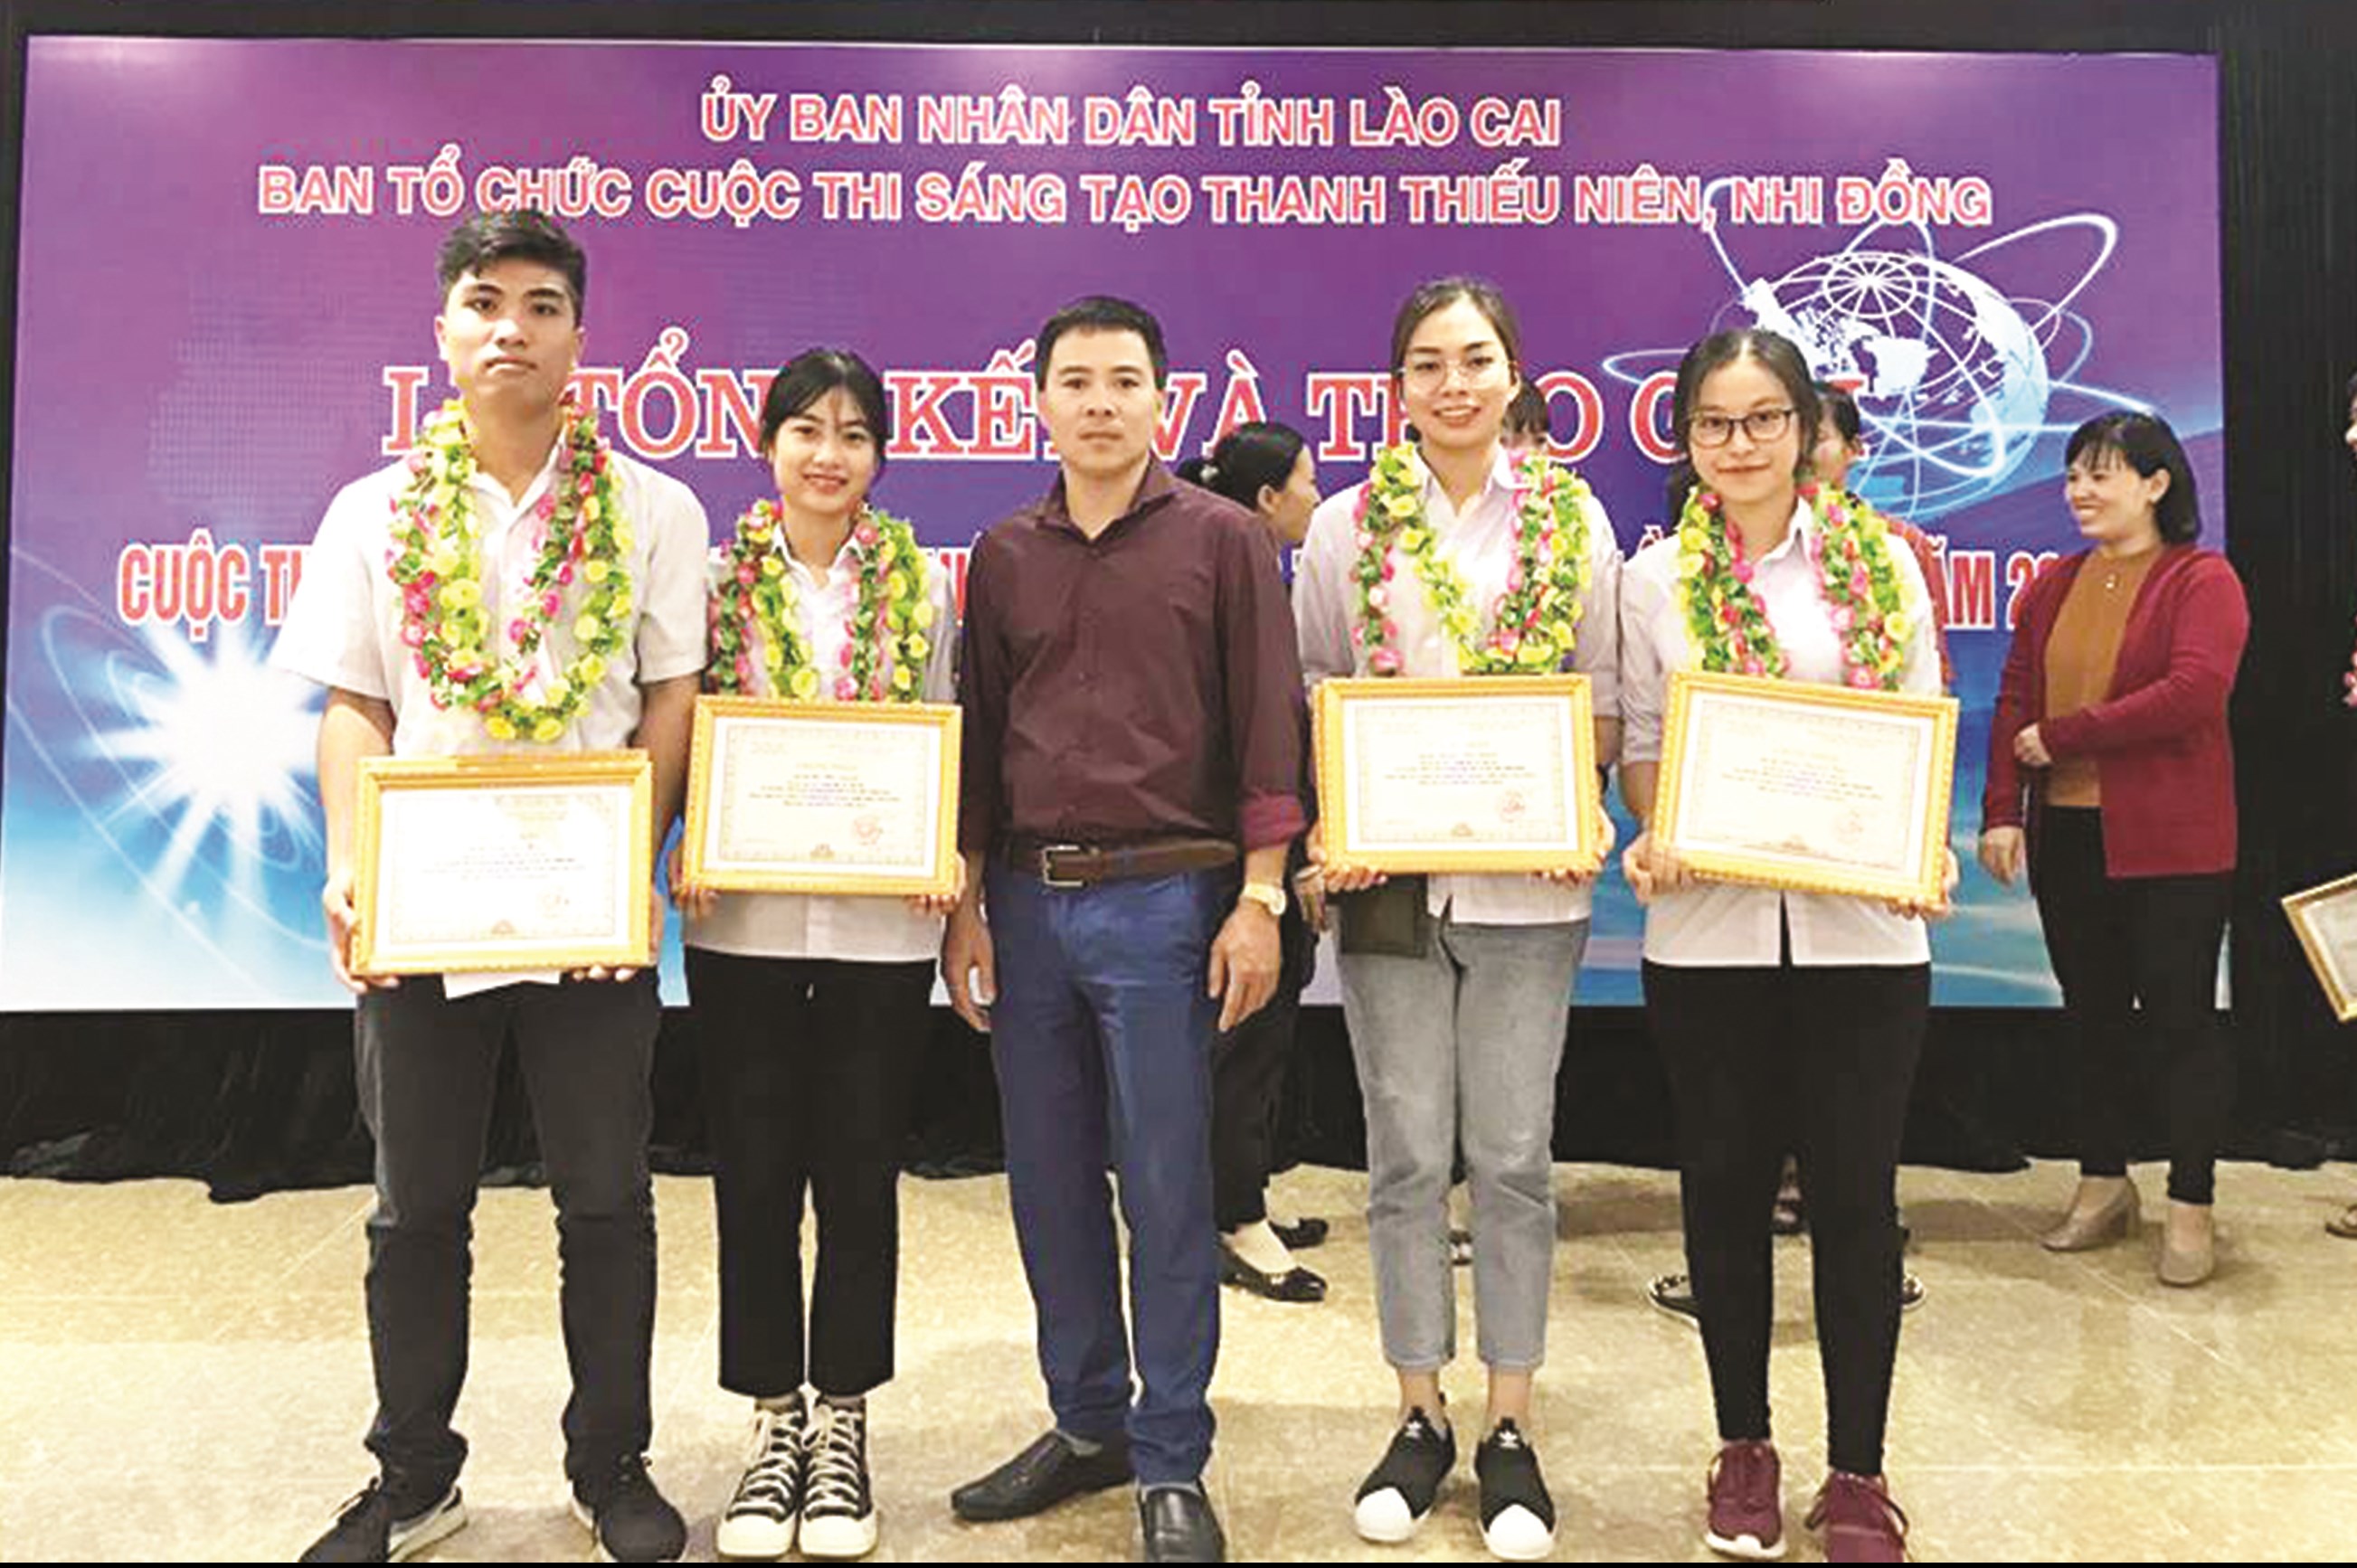 Thầy giáo Hoàng Trung Kiên và nhóm học sinh tham gia cuộc thi sáng tạo thanh, thiếu niên tỉnh Lào Cai